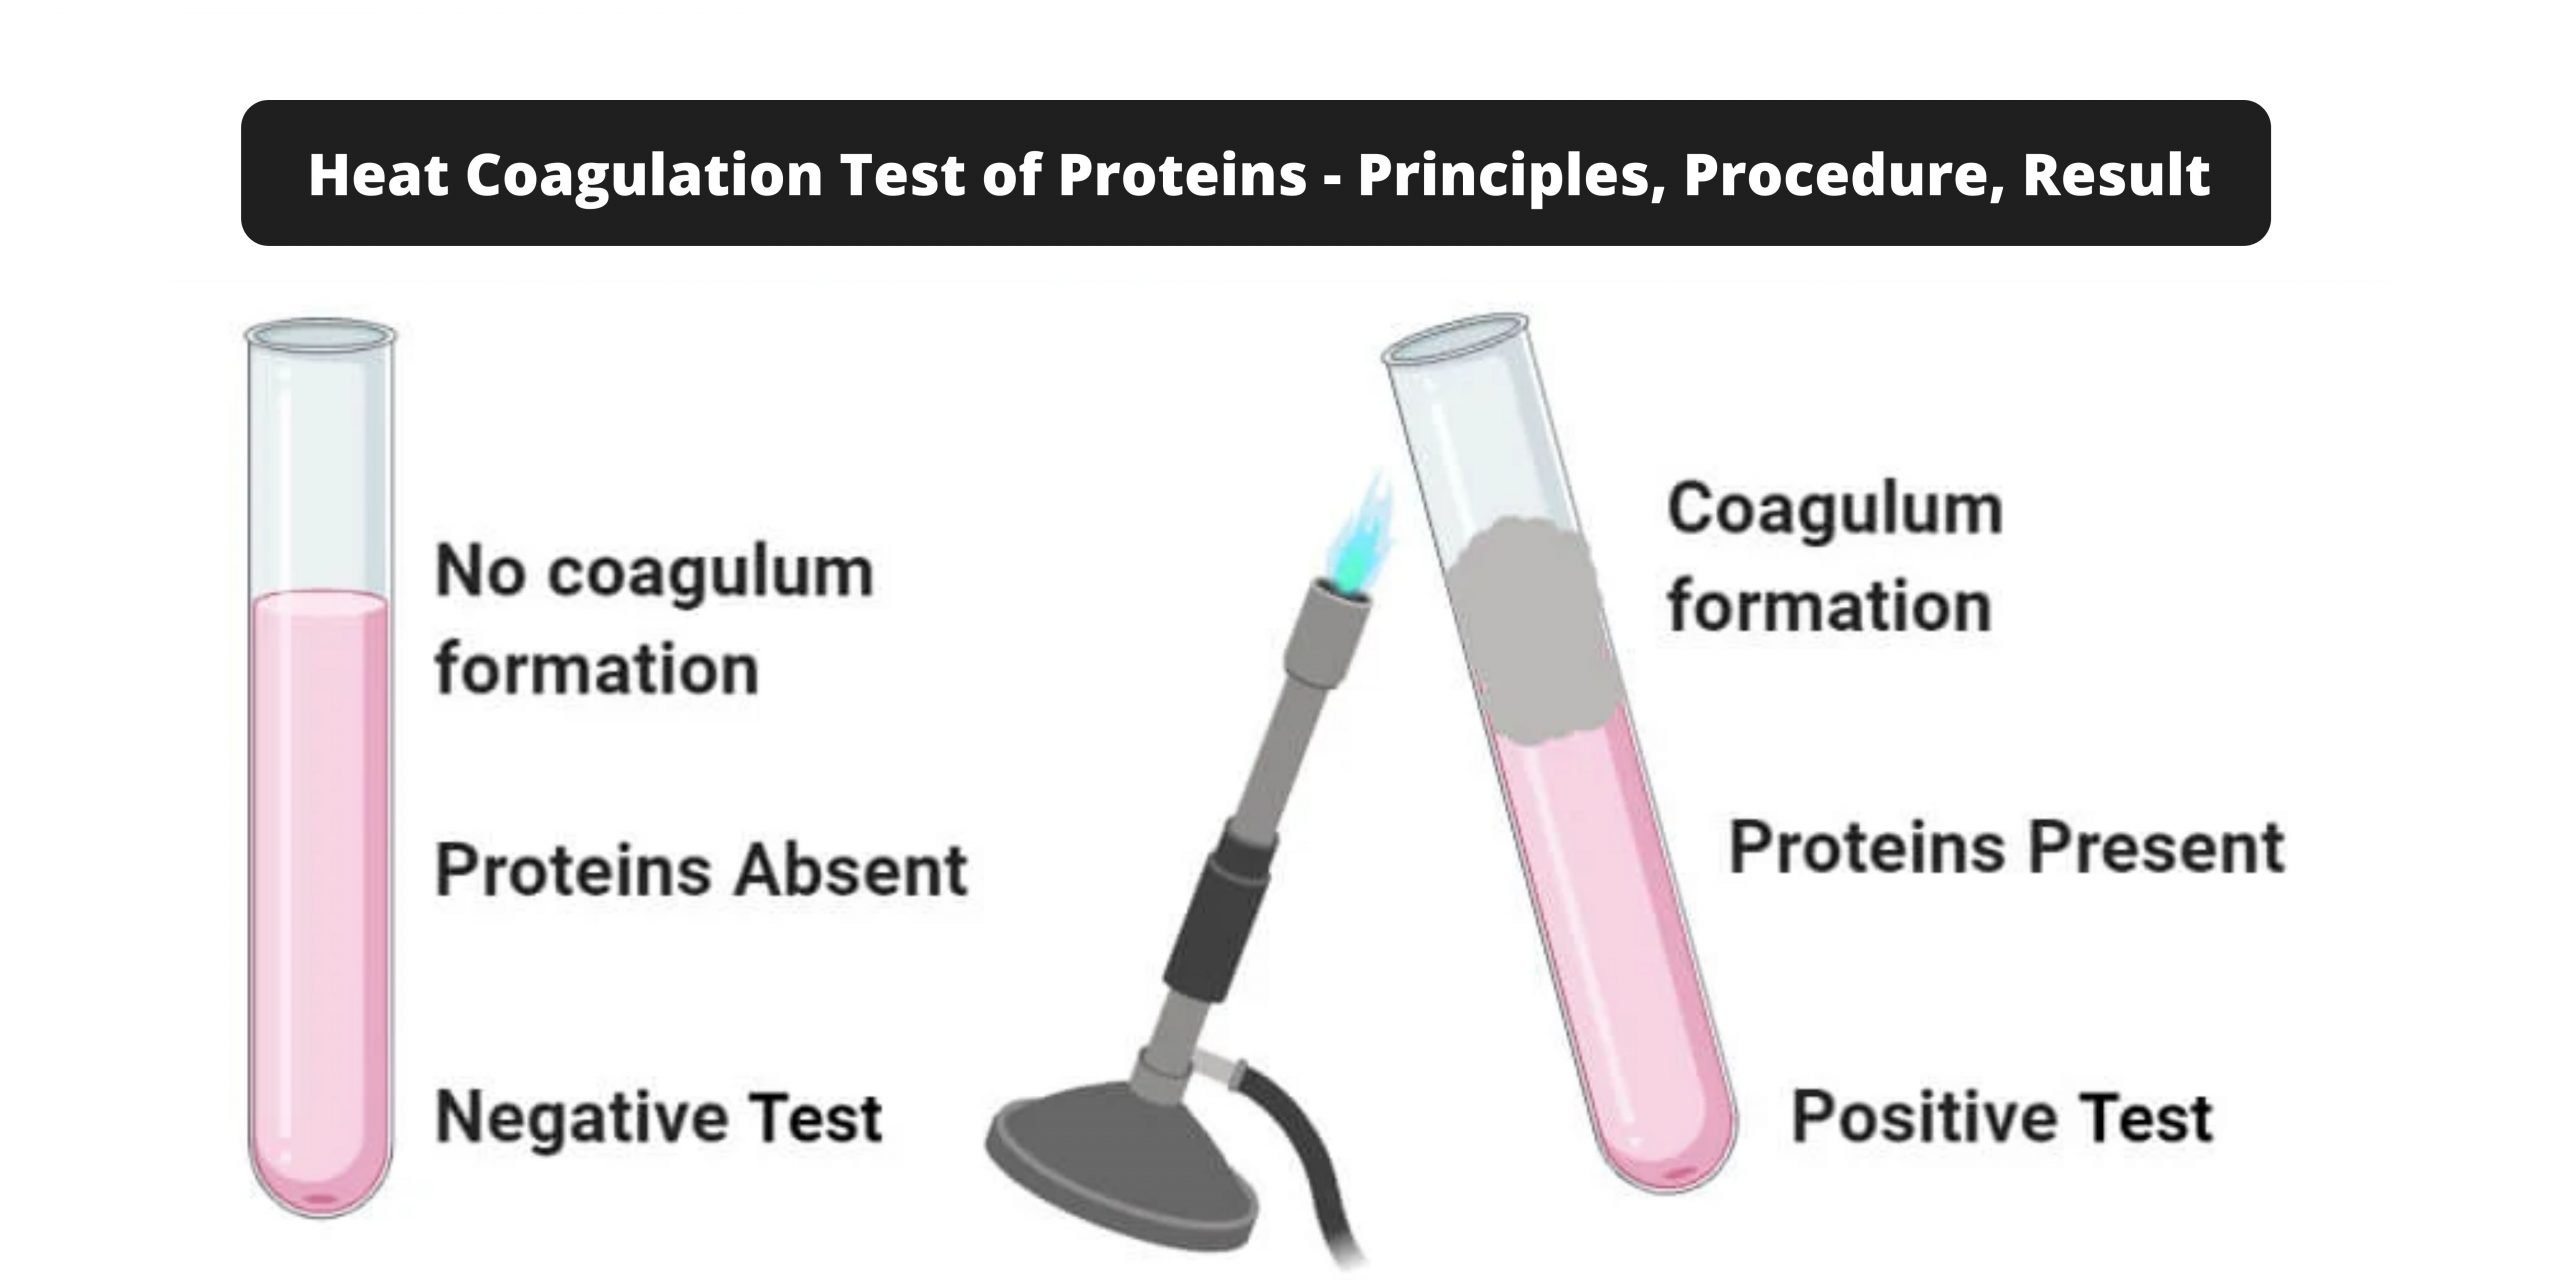 Heat Coagulation Test of Proteins - Principles, Procedure, Result